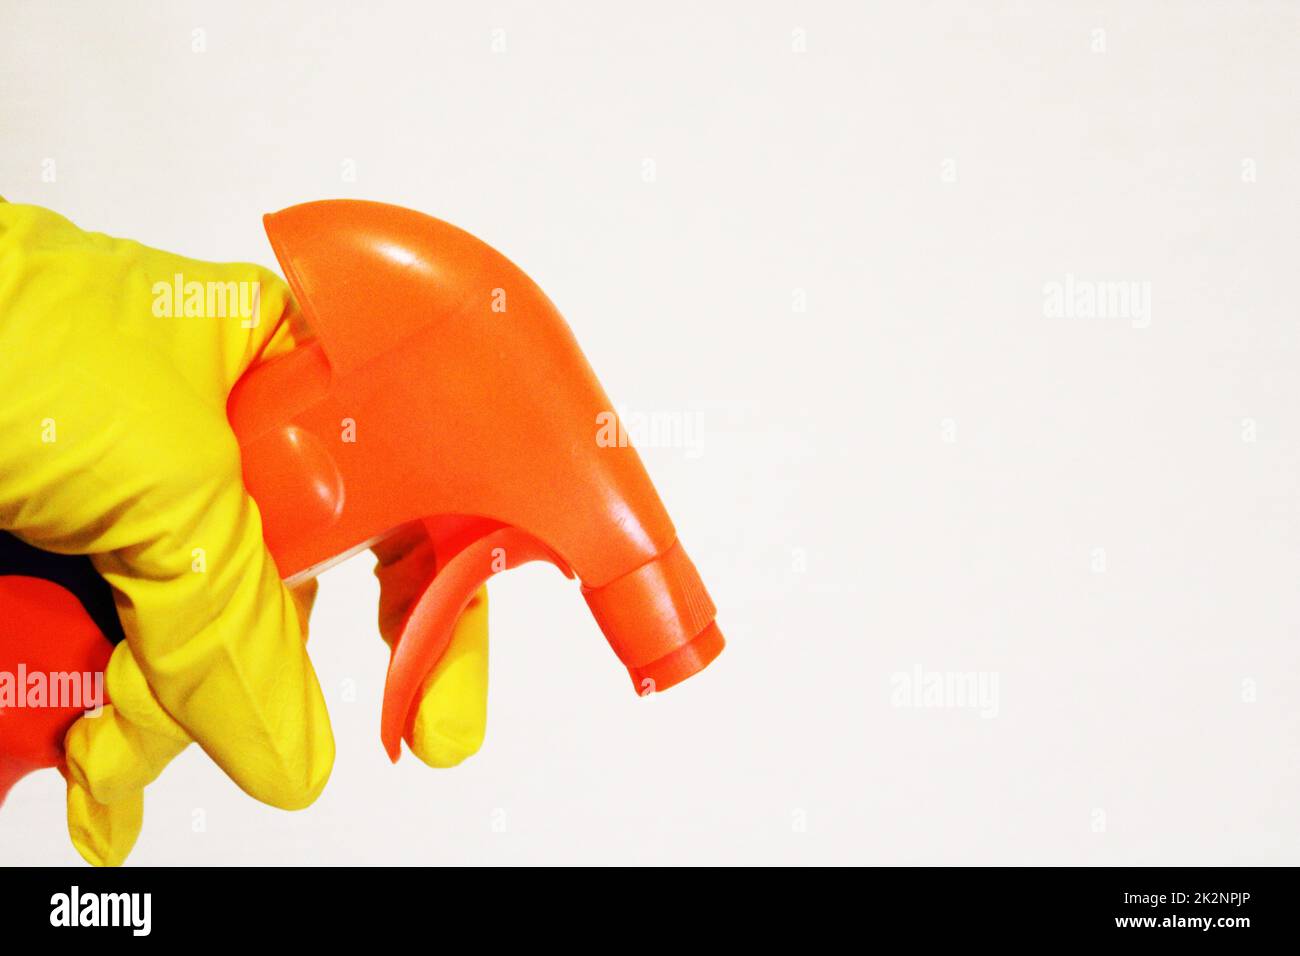 Image d'une main portant un gant en caoutchouc avec un spray nettoyant. Le concept de pureté. Banque D'Images